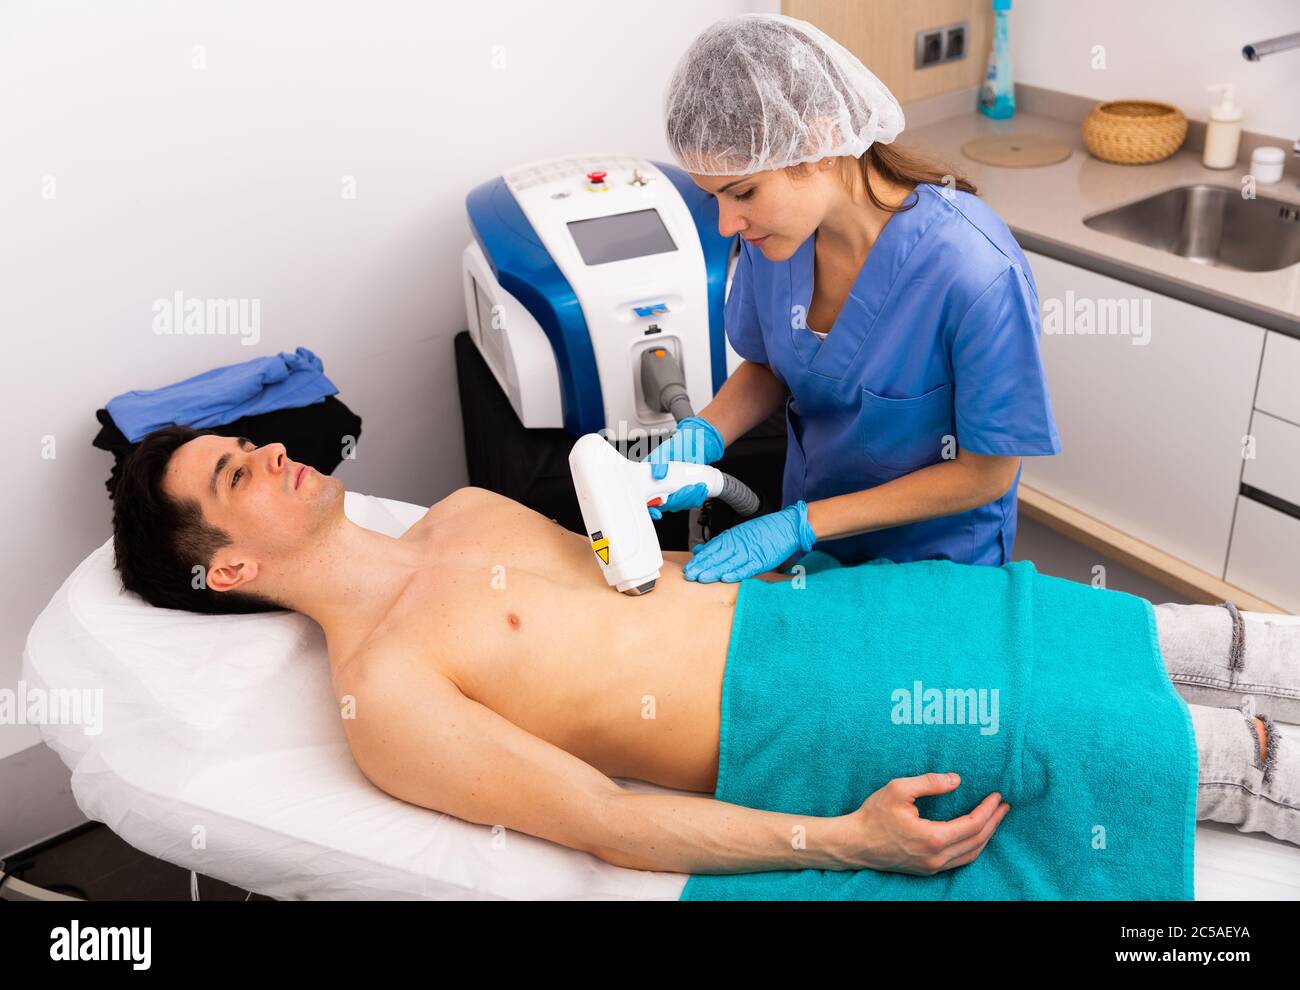 Jeune client masculin recevant un traitement matériel d'épilation sur le  thorax par un cosmetologue professionnel en clinique esthétique Photo Stock  - Alamy